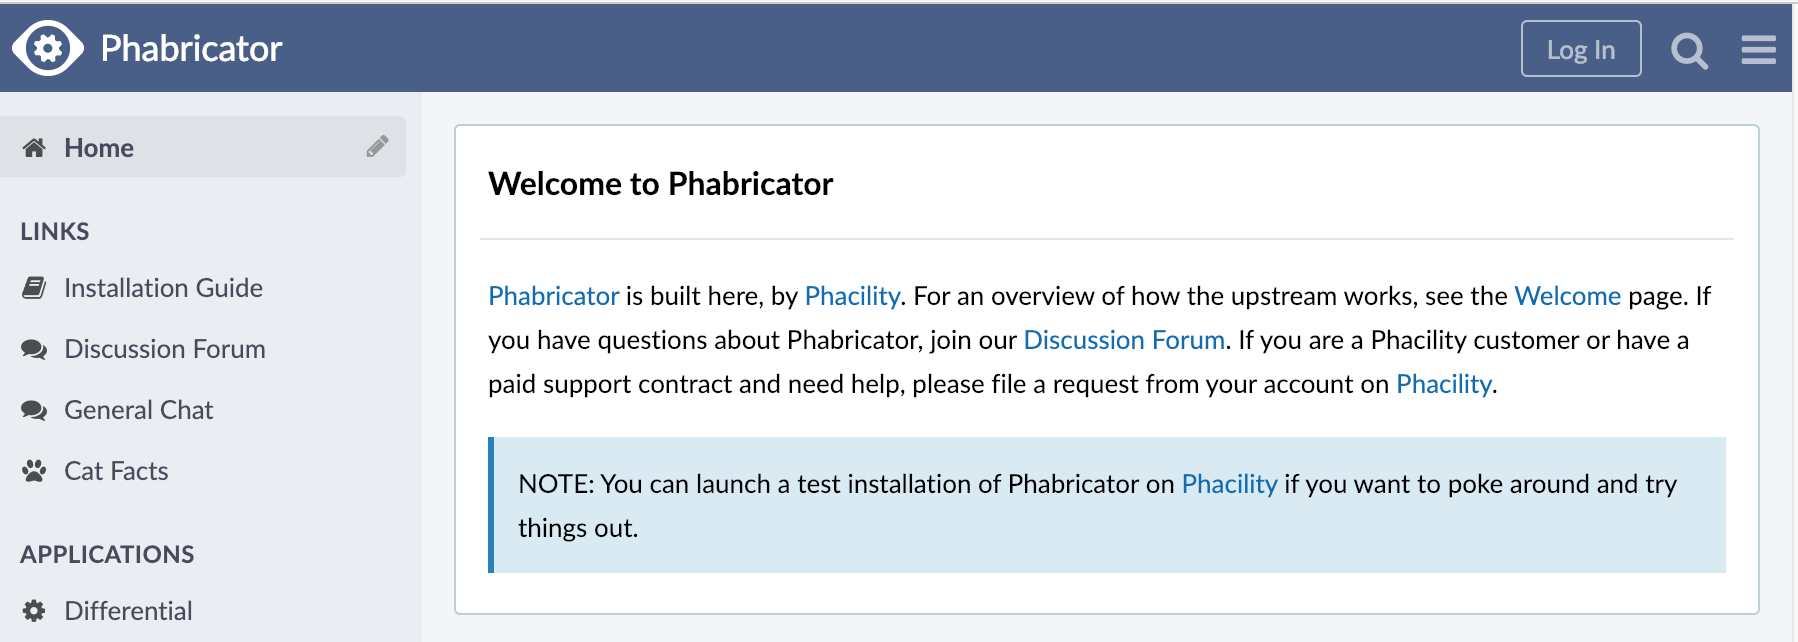 Log in to Phabricator